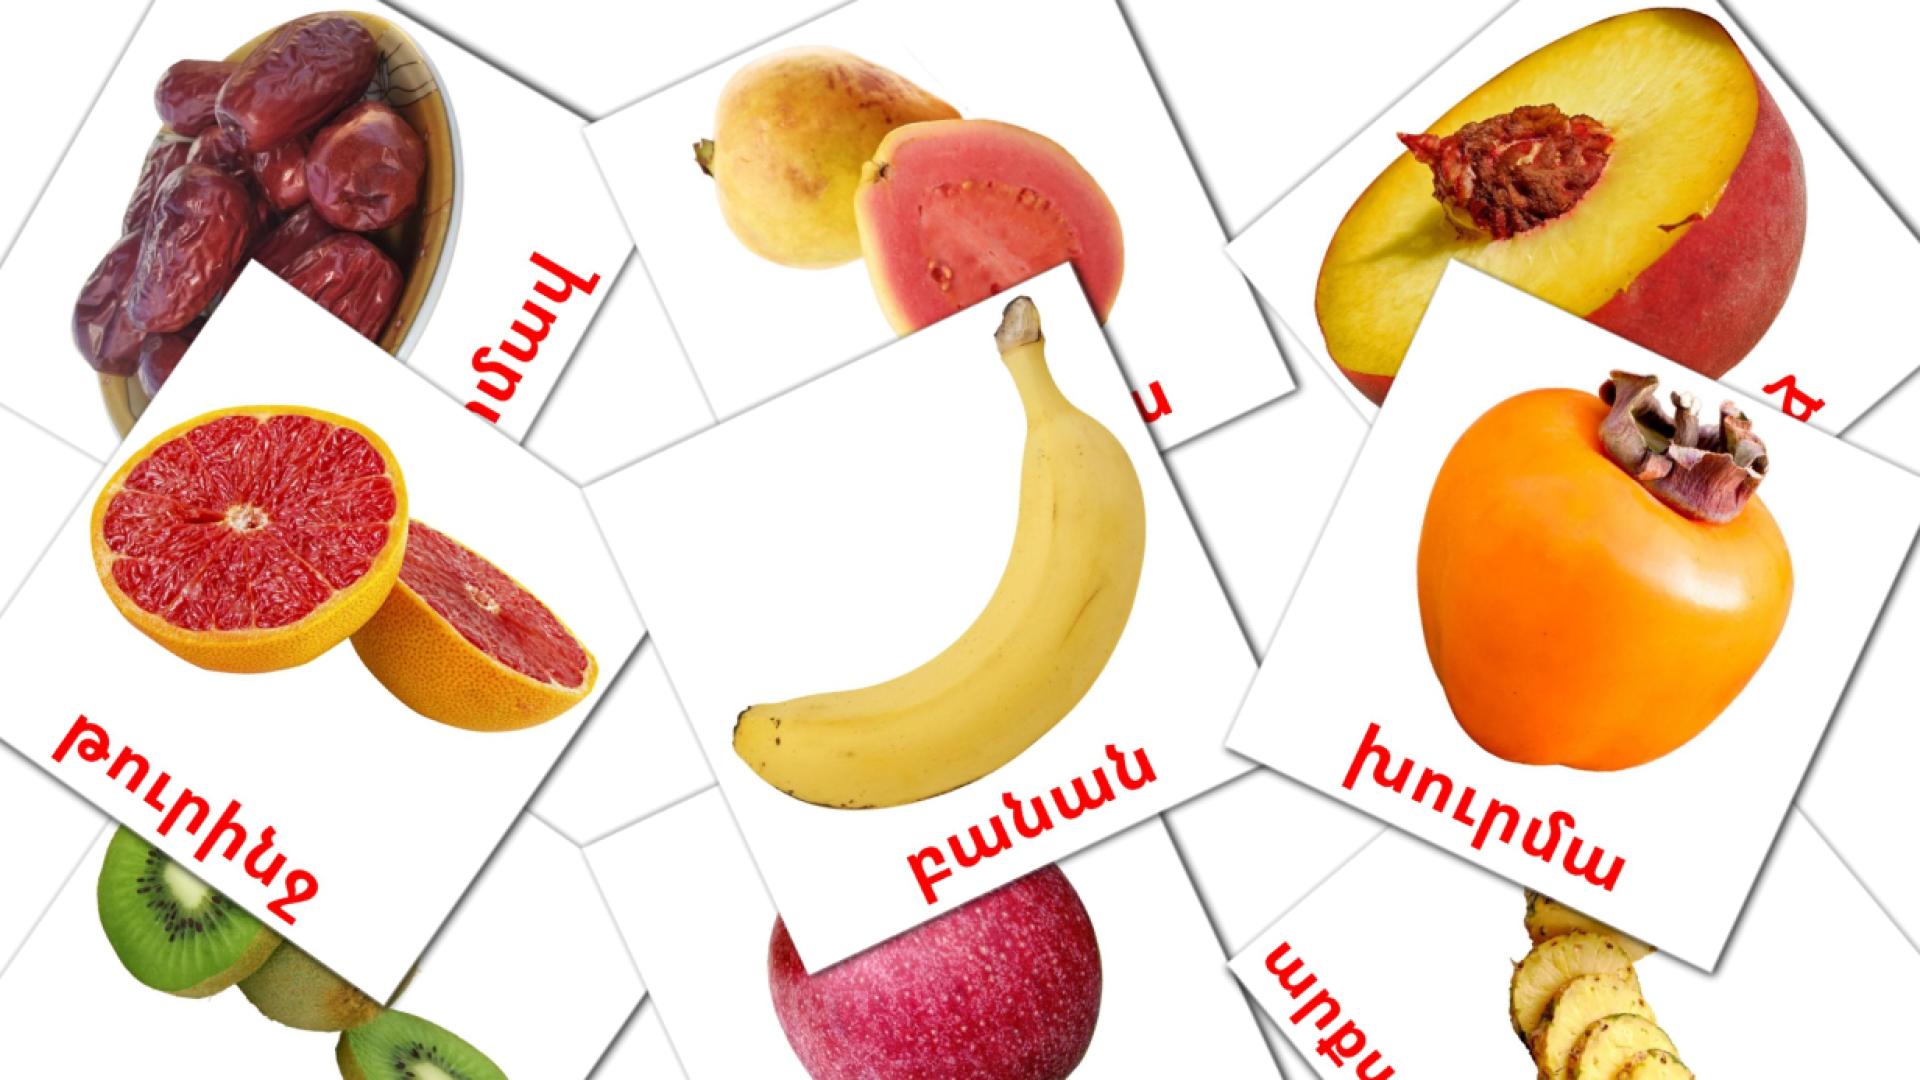 Fruits - armenian vocabulary cards